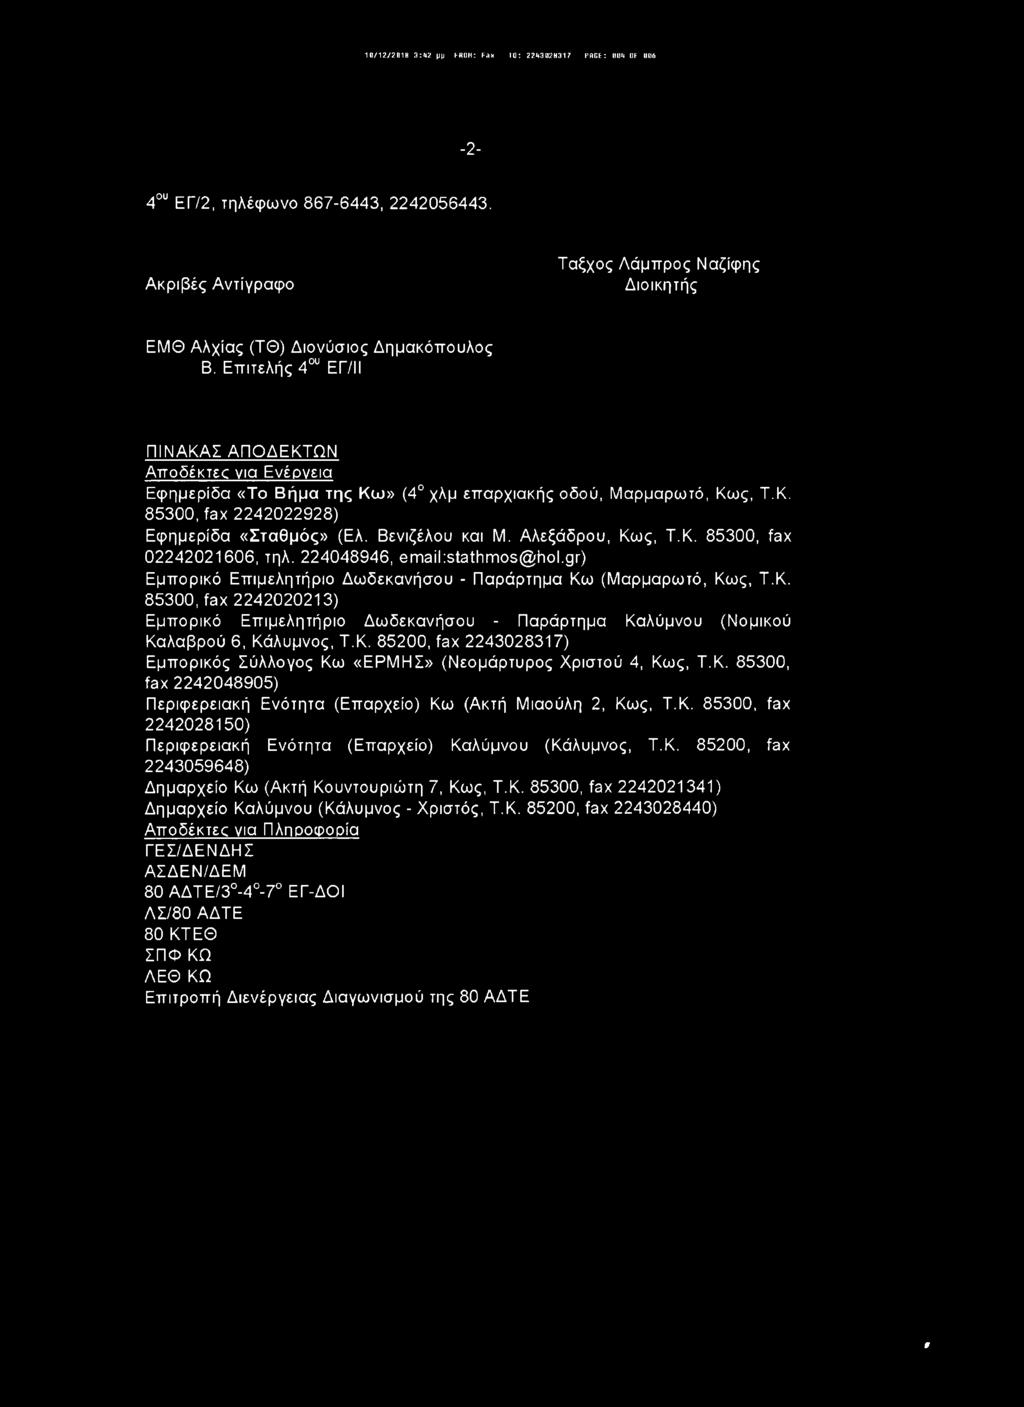 Αλεξάδρου, Κως, Τ.Κ. 85300, fax 02242021606, τηλ. 224048946, email:stathmos(g;hol.gr) Εμπορικό Επιμελητήριο Δωδεκανήσου - Παράρτημα Κω (Μαρμαρωτό, Κως, Τ.Κ. 85300, fax 2242020213) Εμπορικό Επιμελητήριο Δωδεκανήσου - Παράρτημα Καλύμνου (Νομικού Καλαβρού 6, Κάλυμνος, Τ.